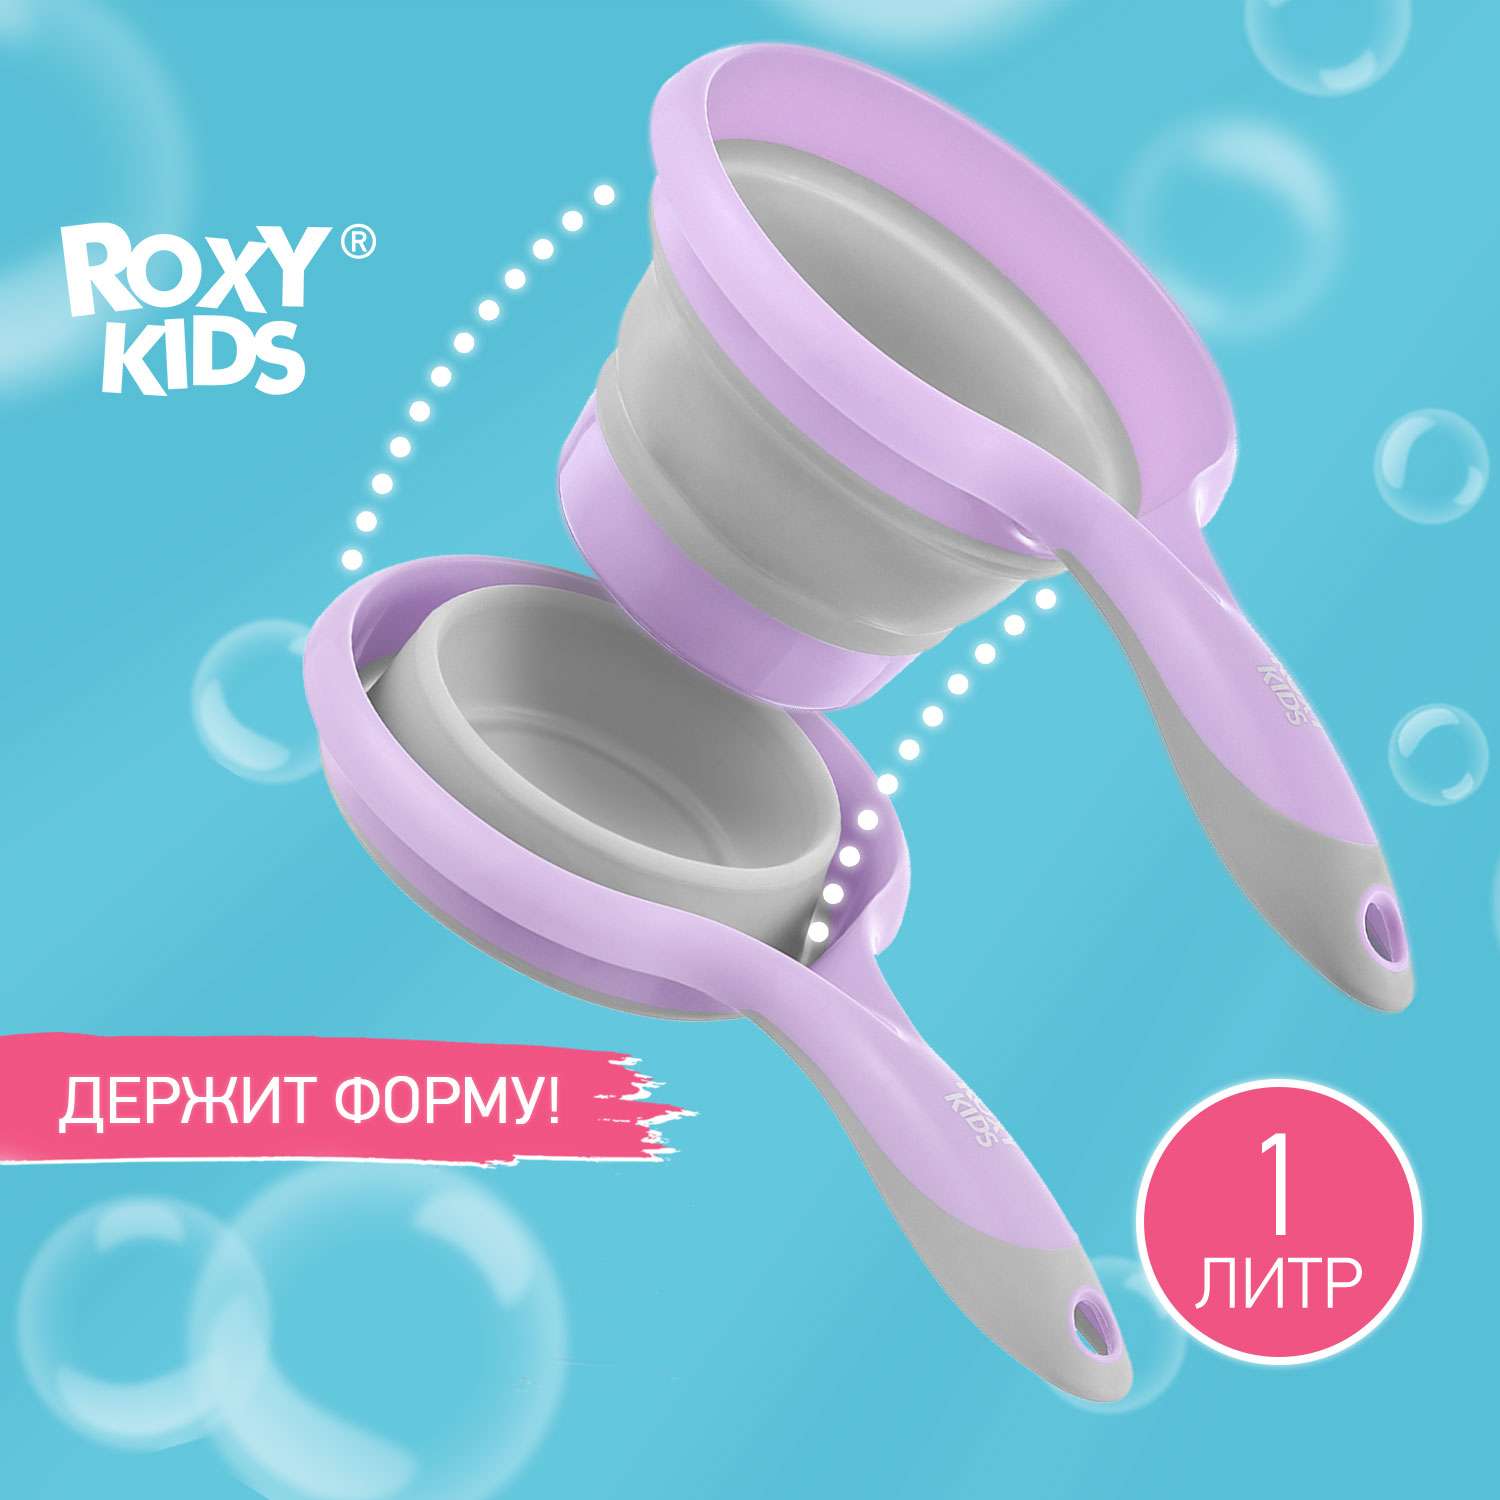 Ковш детский складной ROXY-KIDS для купания малышей цвет сиренево серый - фото 1